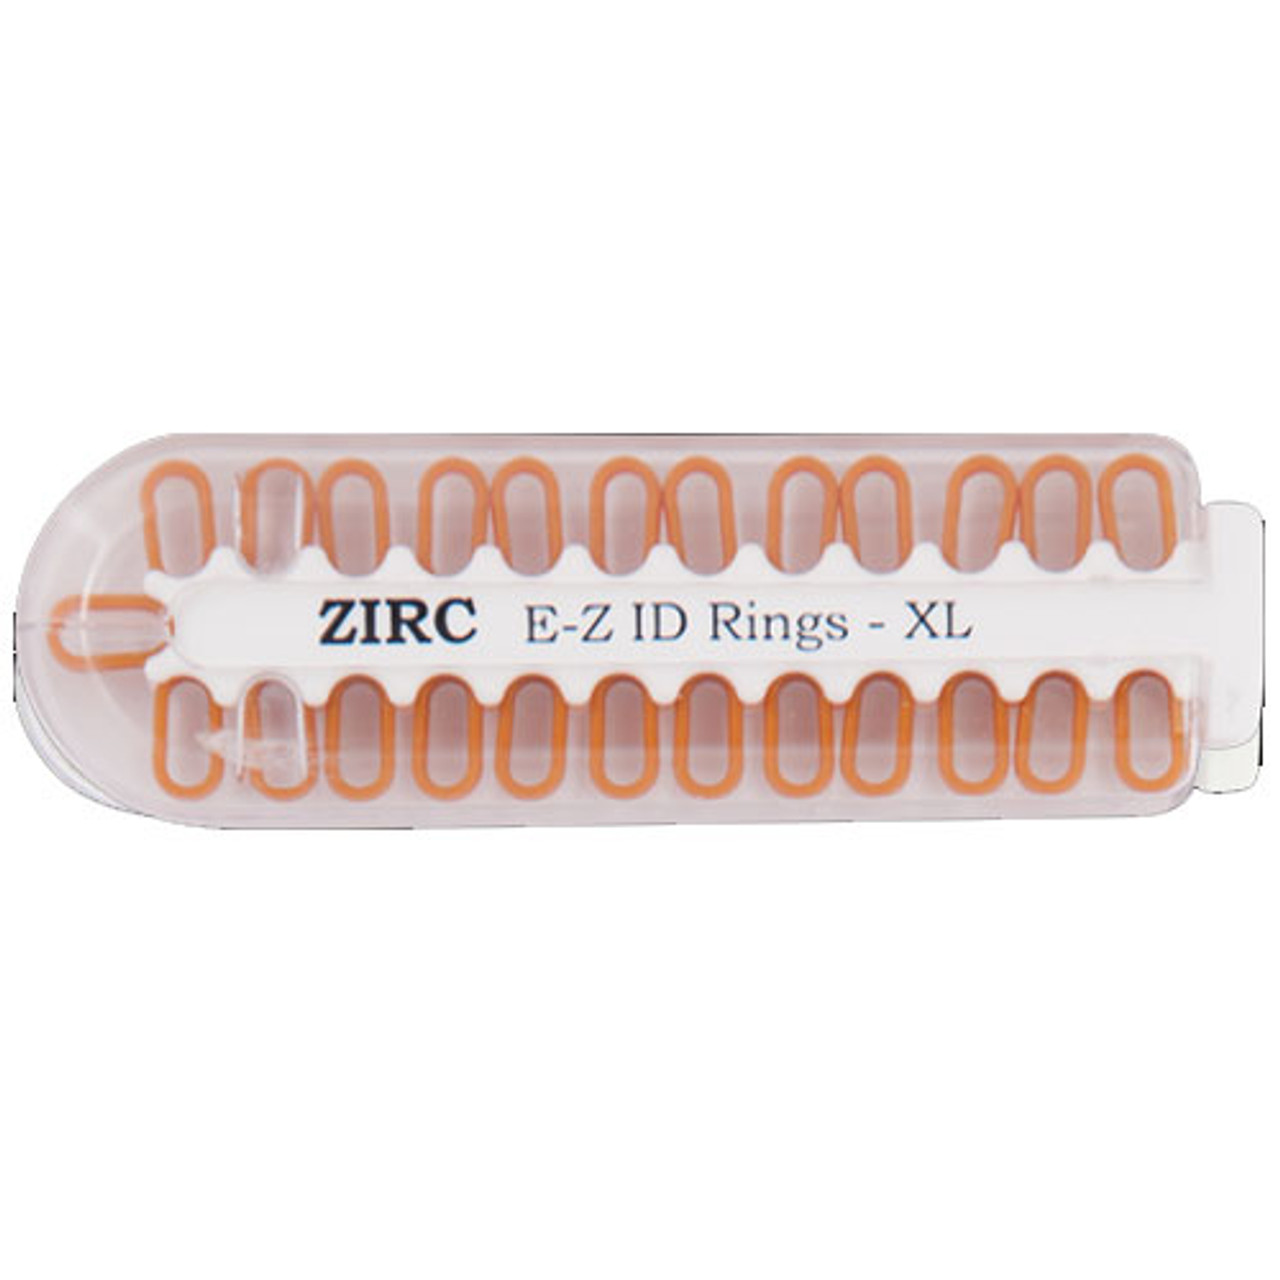 Zirc E-Z ID Rings XL, Copper, 25pk